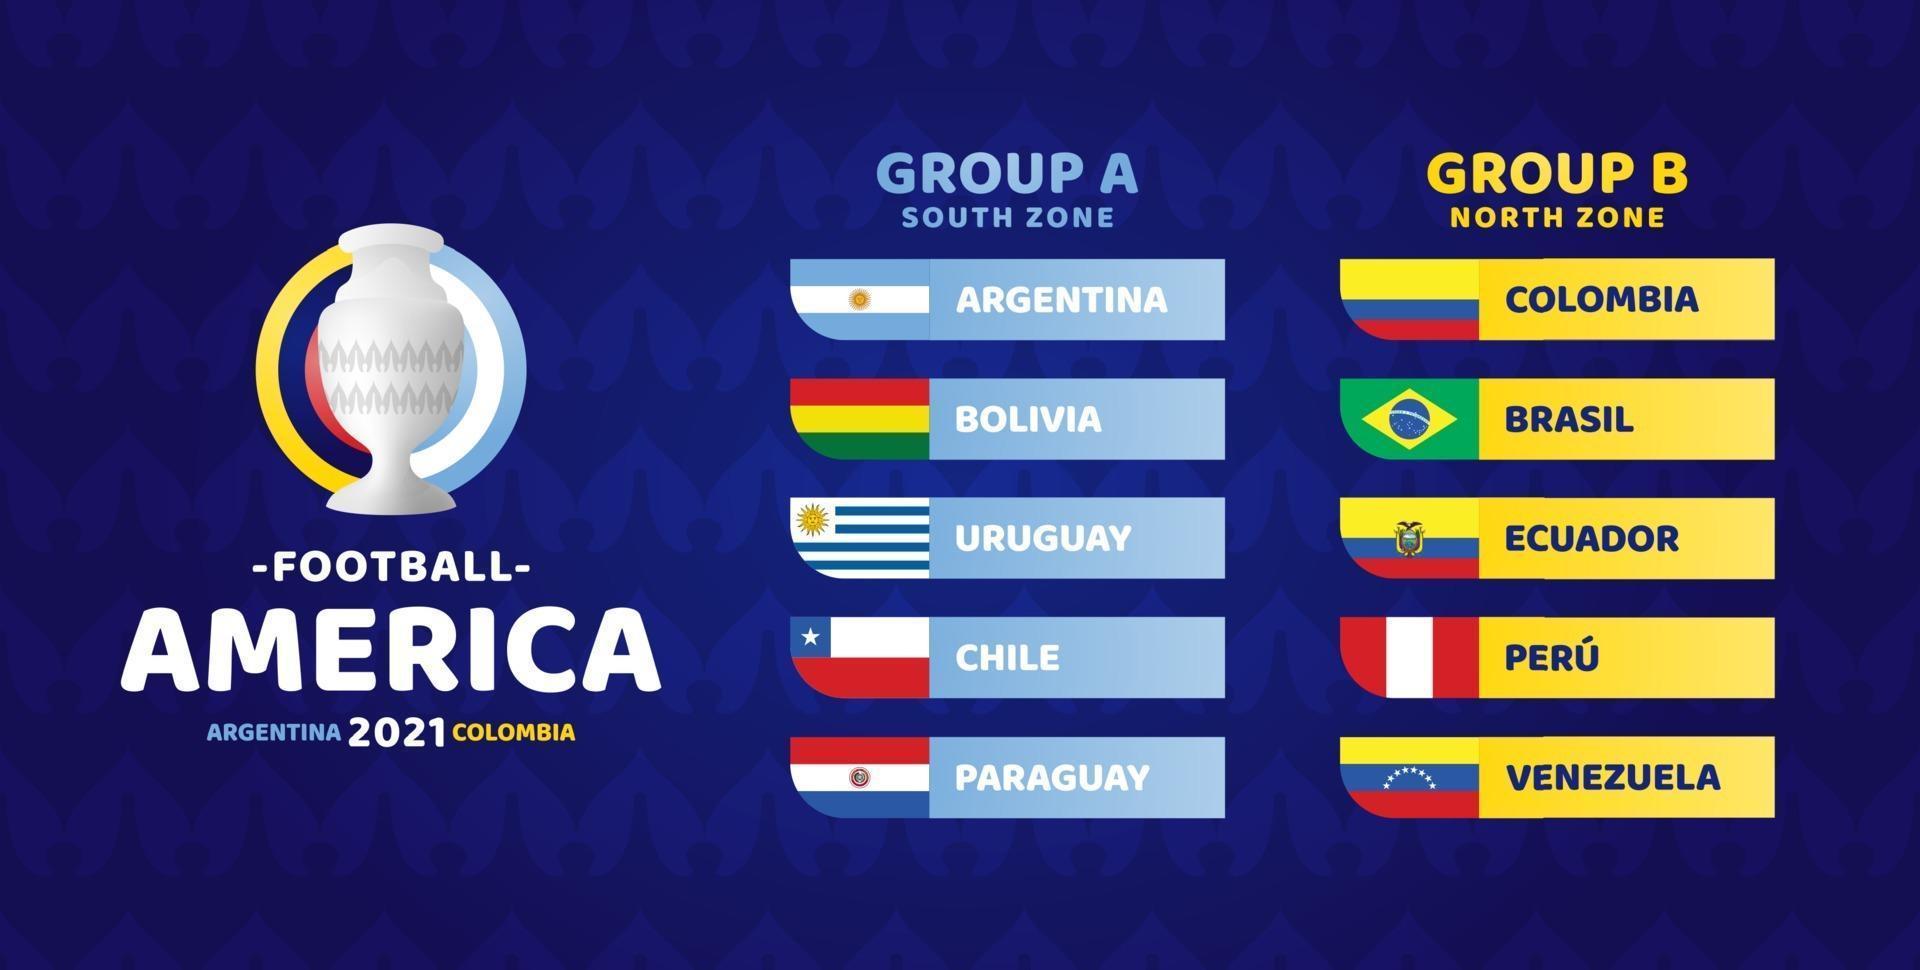 ilustração em vetor futebol América do Sul 2021 argentina colômbia. dois grupos a e grupo b torneio de futebol da fase final